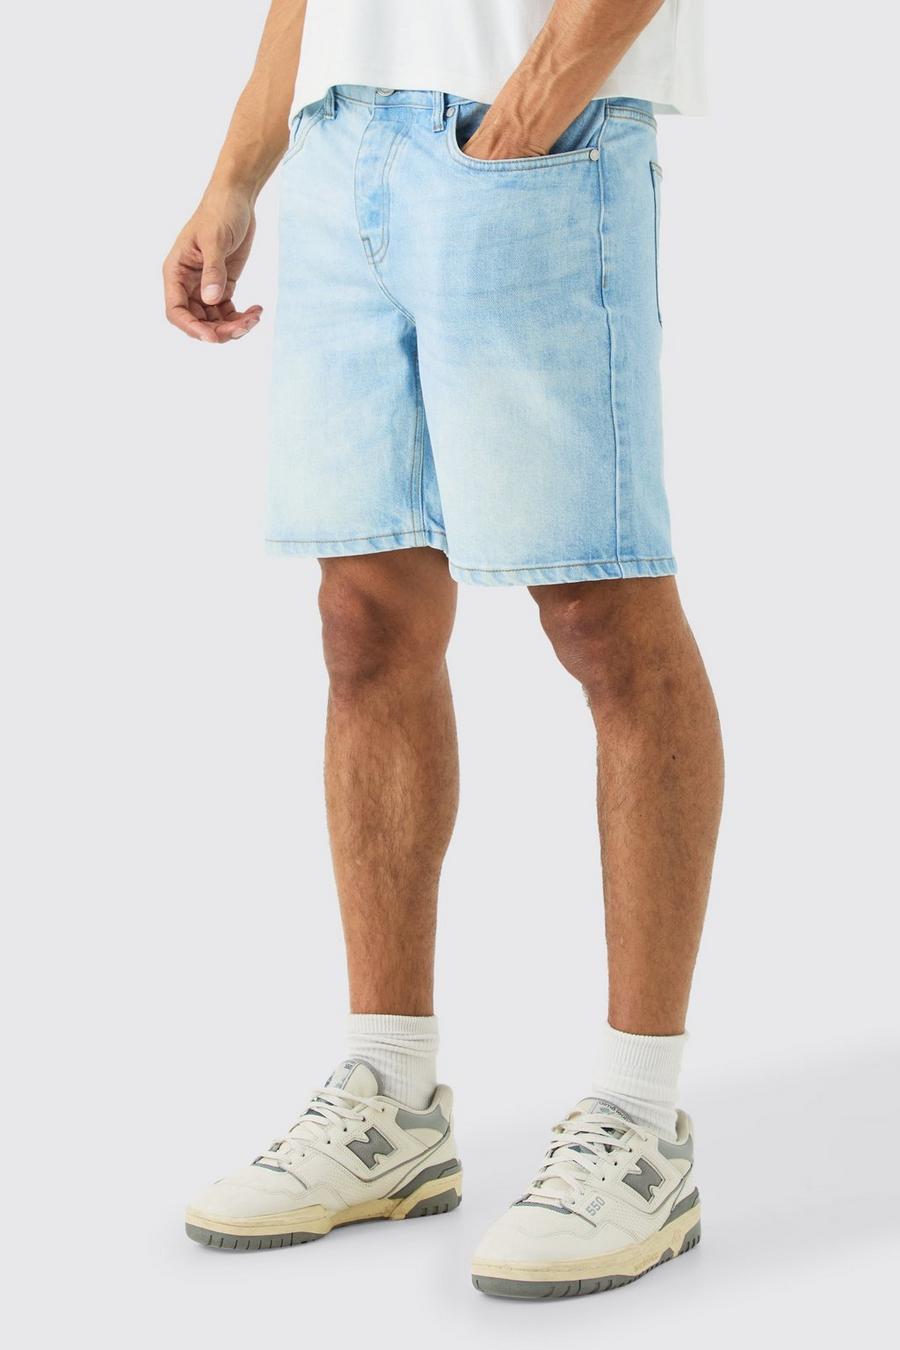 Pantalones cortos vaqueros ajustados sin tratar en azul claro, Light blue